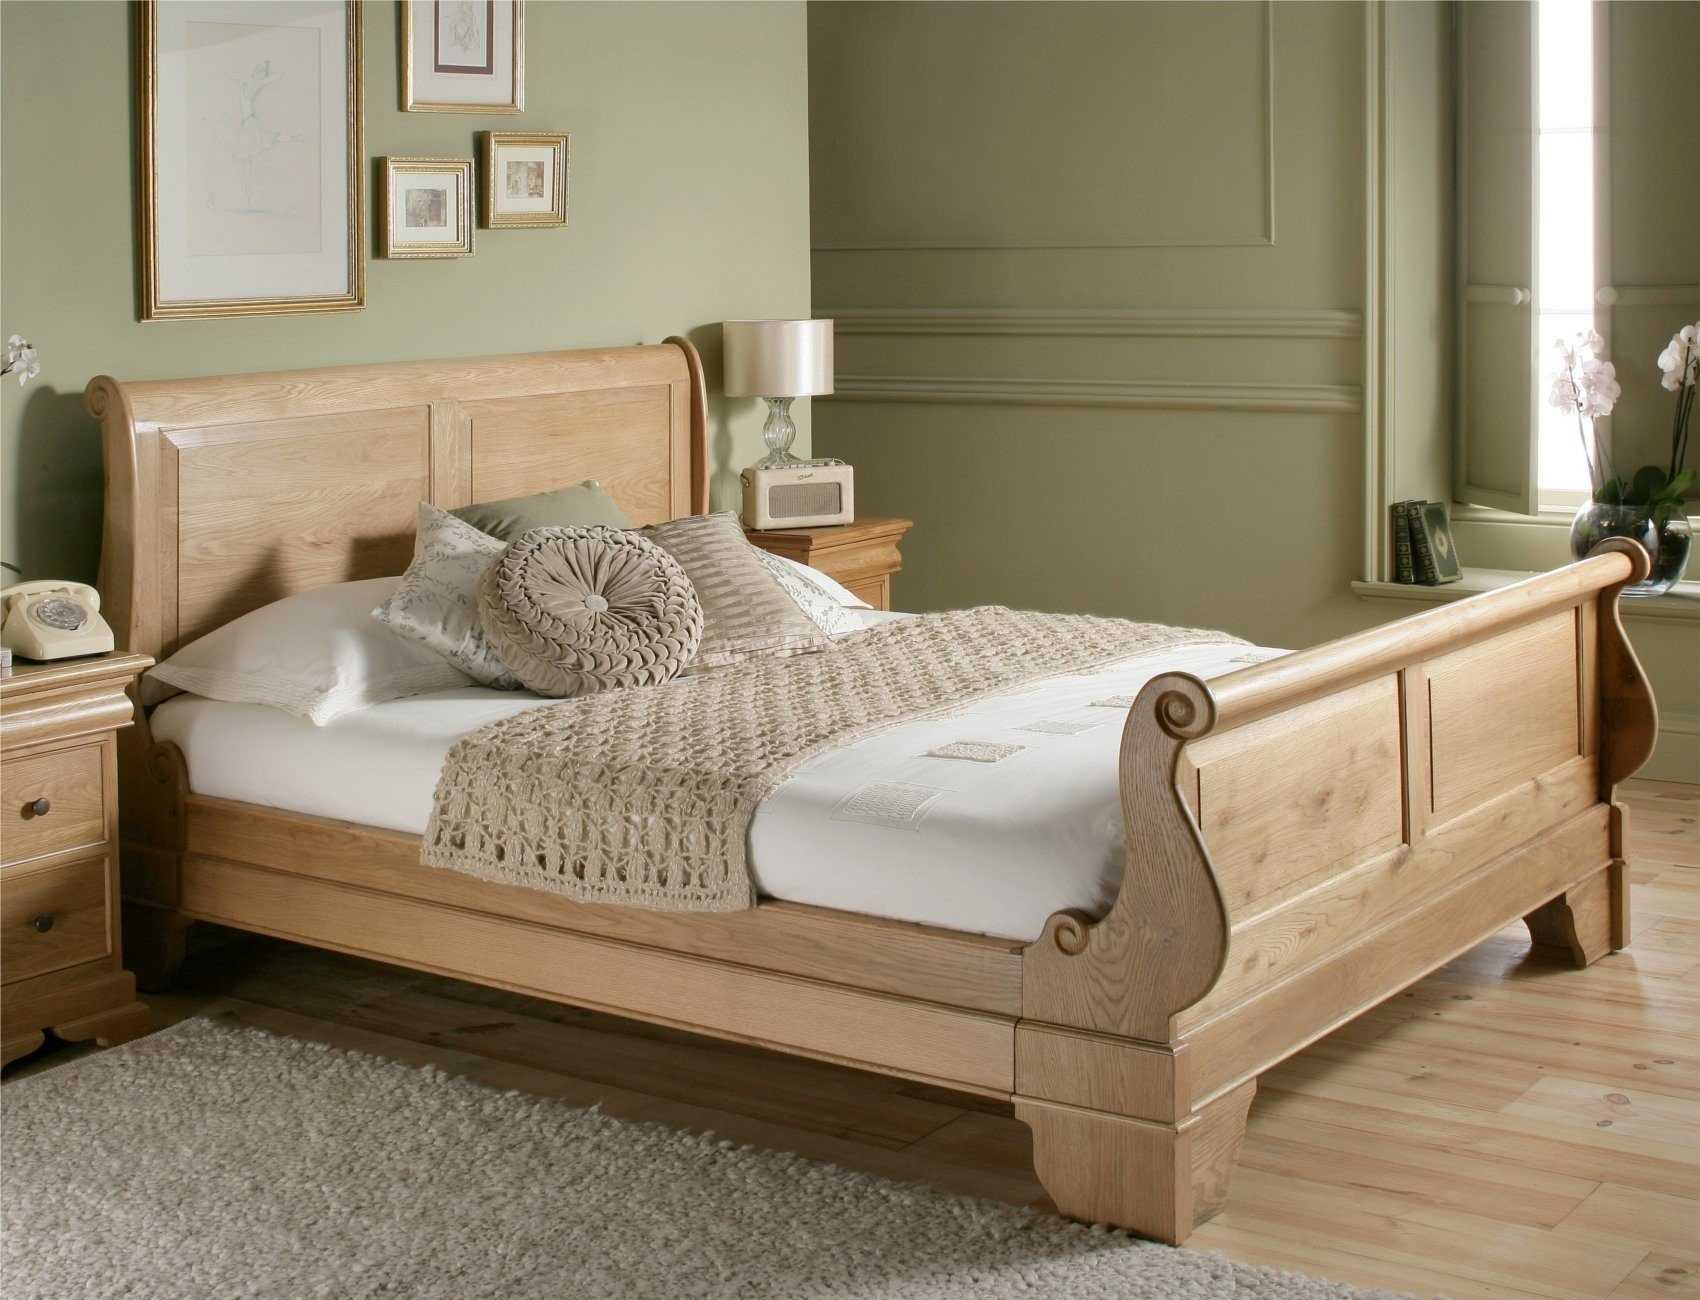 Мебель из массива дерева, дуба, сосны или бука, под старину для спальни, гостиной, ванной или кухни